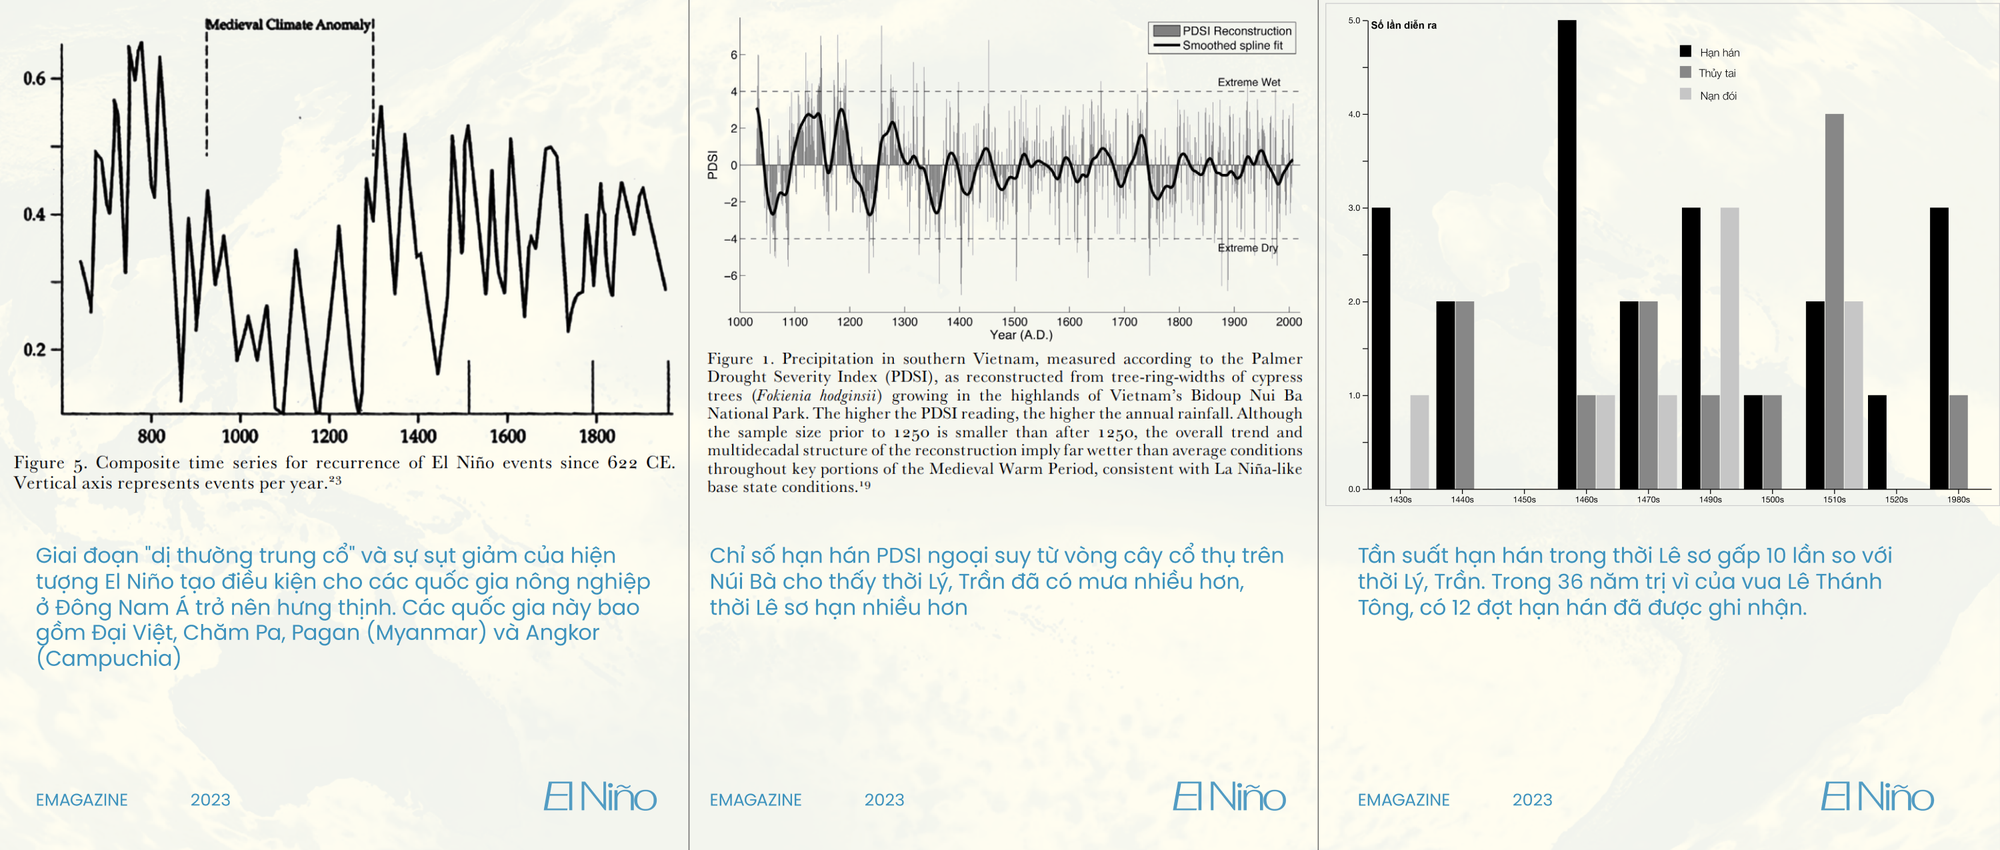 Những bí ẩn của El Niño: Nguồn gốc, lịch sử và hiệu ứng cánh bướm hai bên bờ Thái Bình Dương - Ảnh 14.